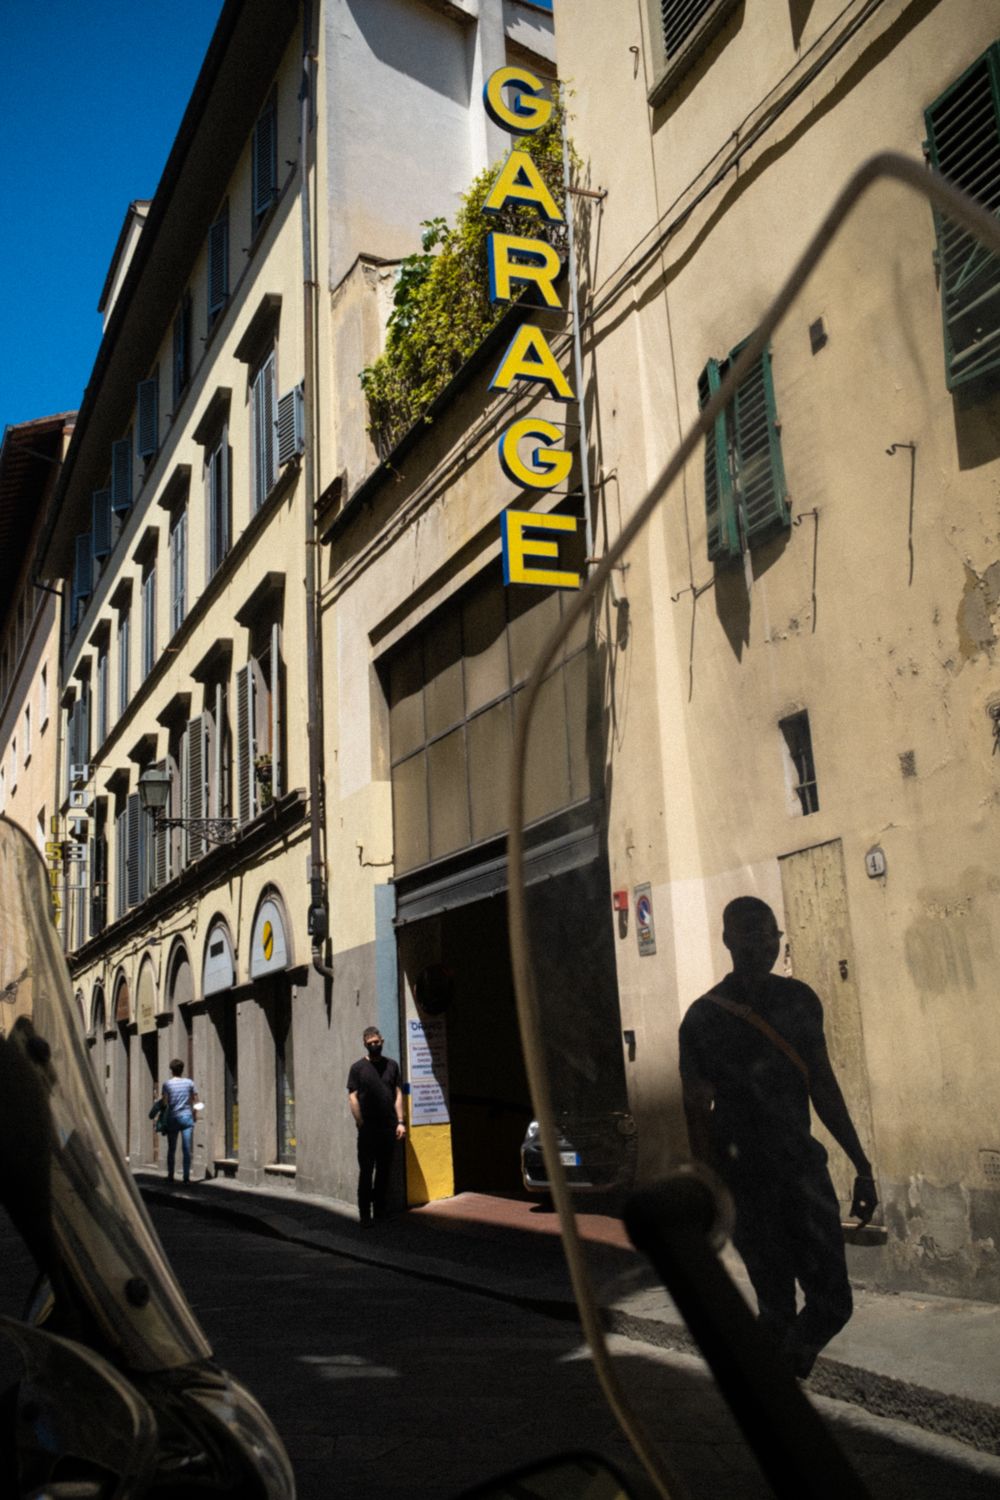 Garage in der Altstadt von Florenz. Starke Licht-Schatten-Kontraste lassen sich die Fassade von den Fußgängern auf der Straße abheben.